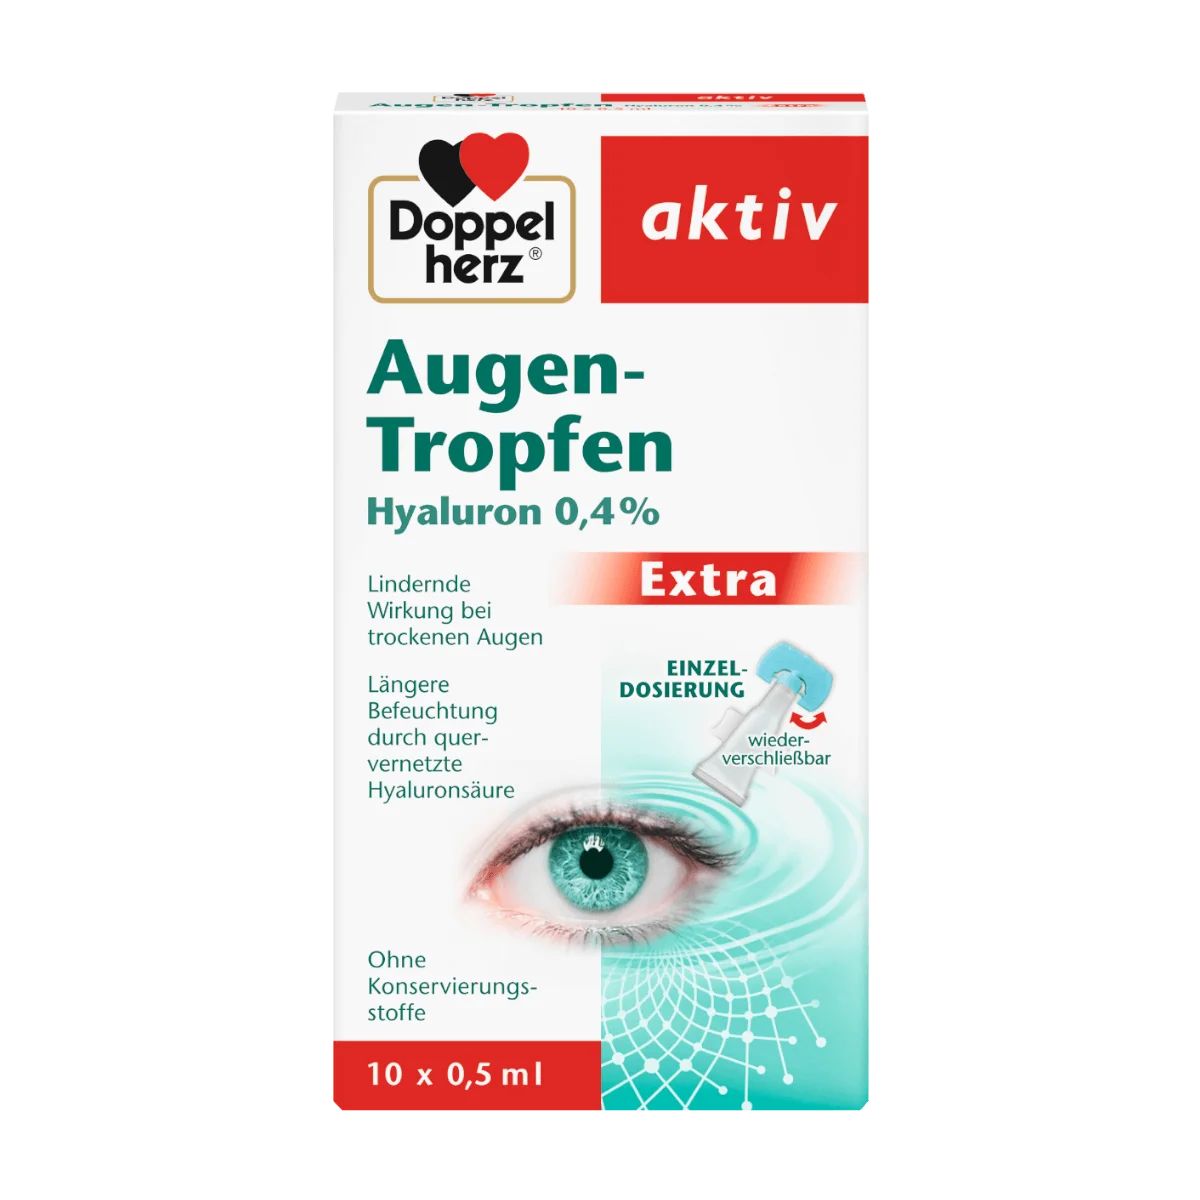 Doppelherz Augen-Tropfen Hyaluron 0,4% 10 x 0,5 ml